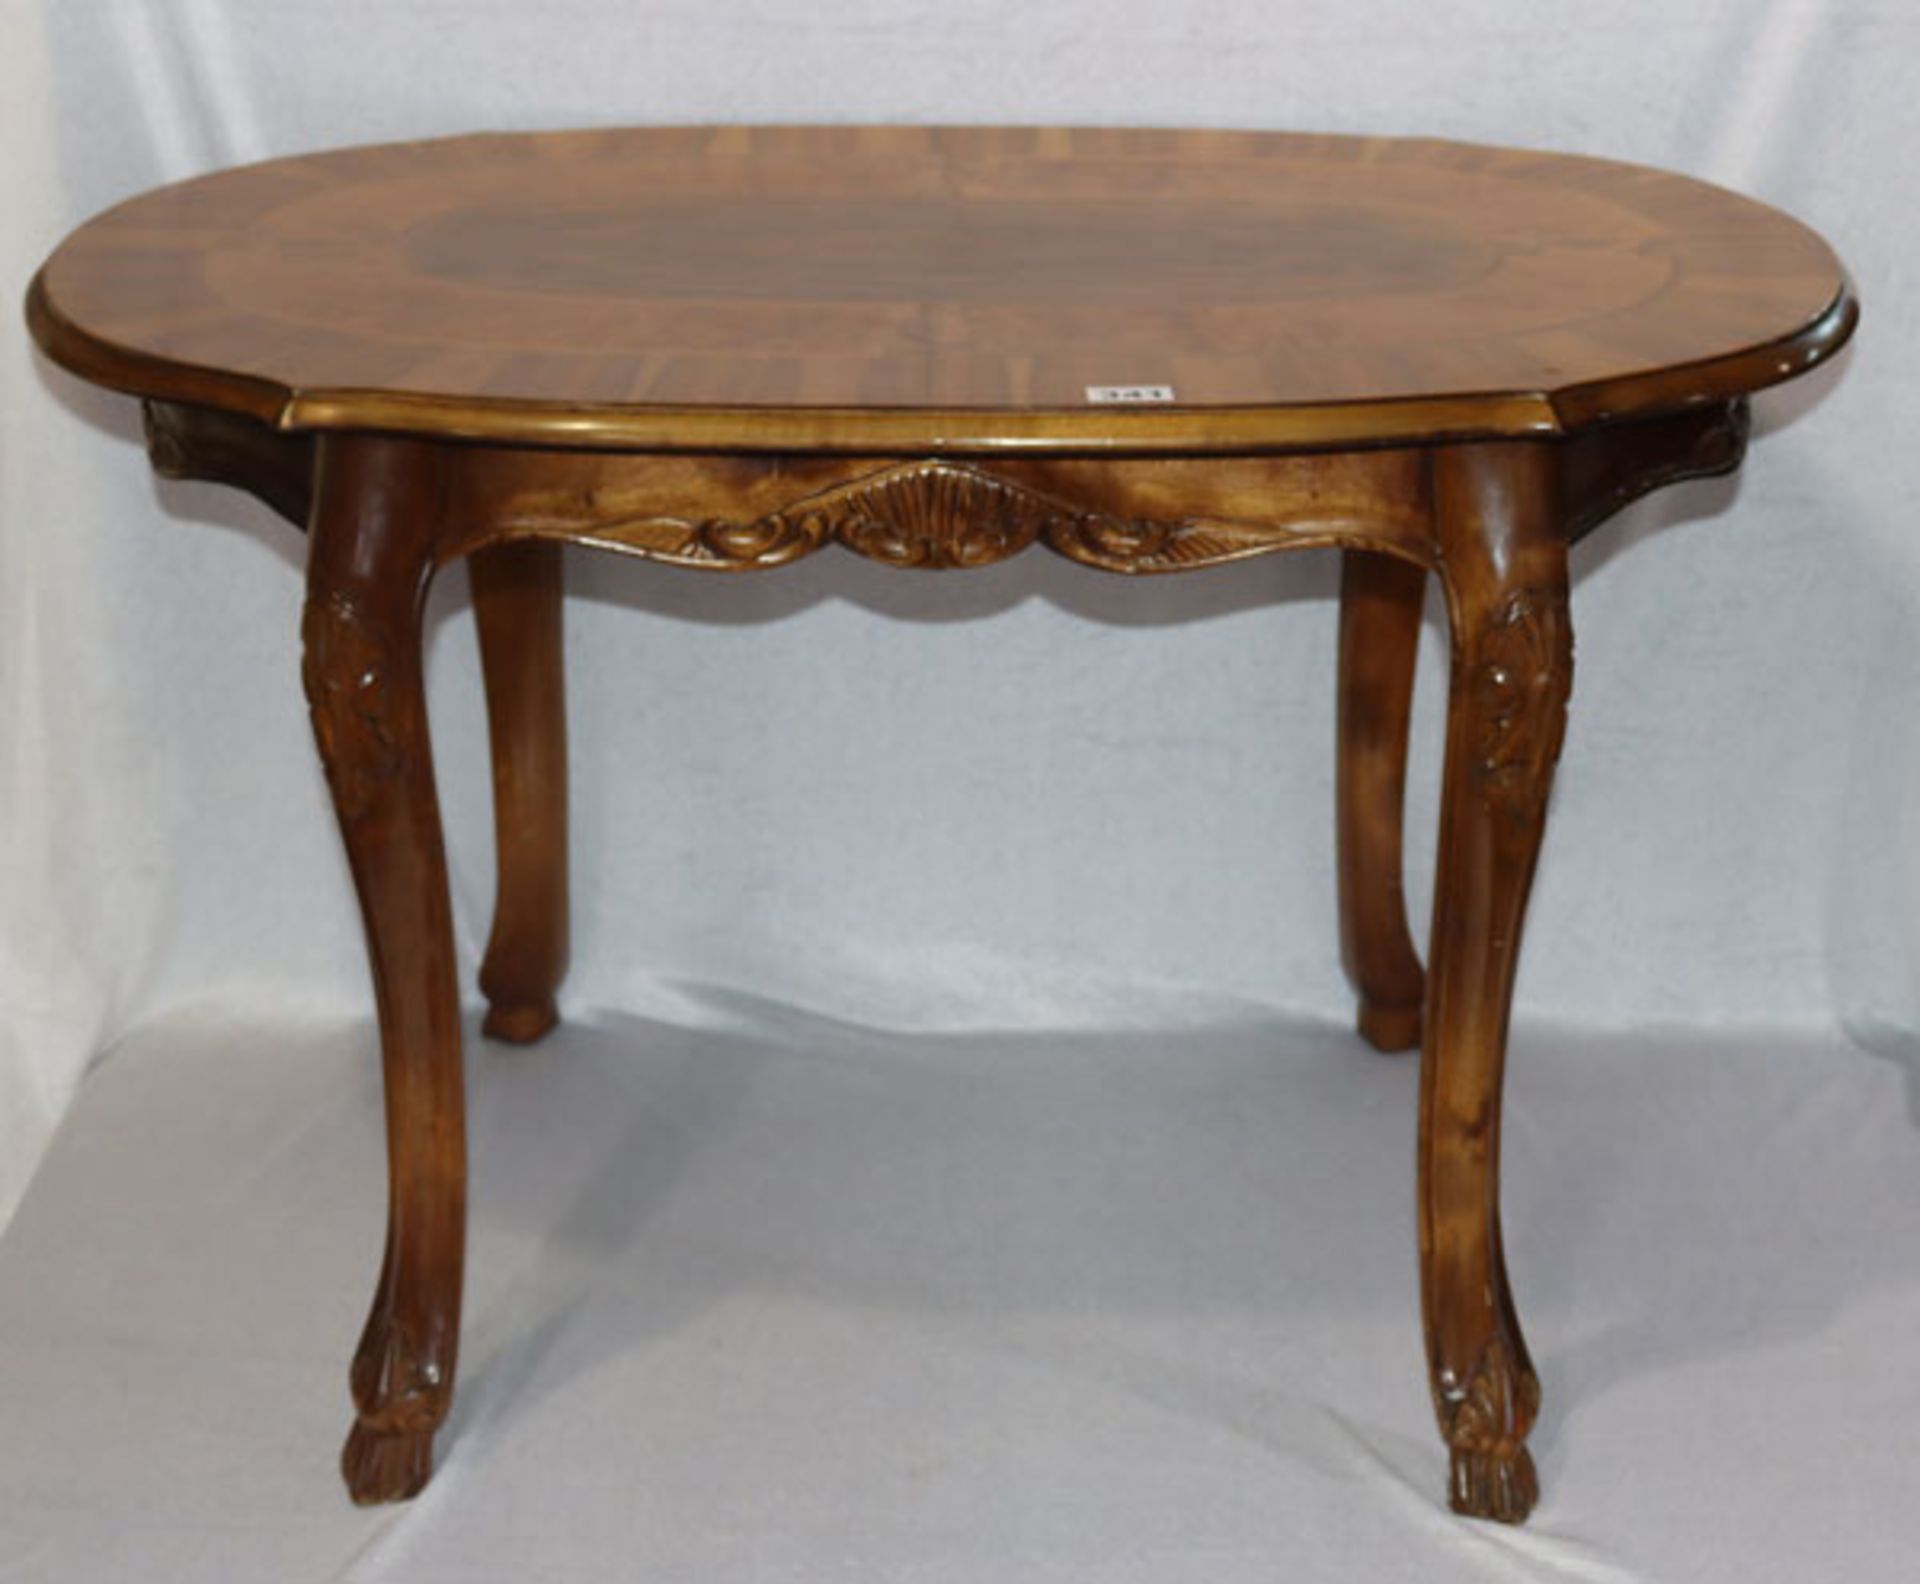 Ovaler Holztisch auf geschwungenen Beinen, Intarsiendekor, Tischplatte beschädigt, Risse und